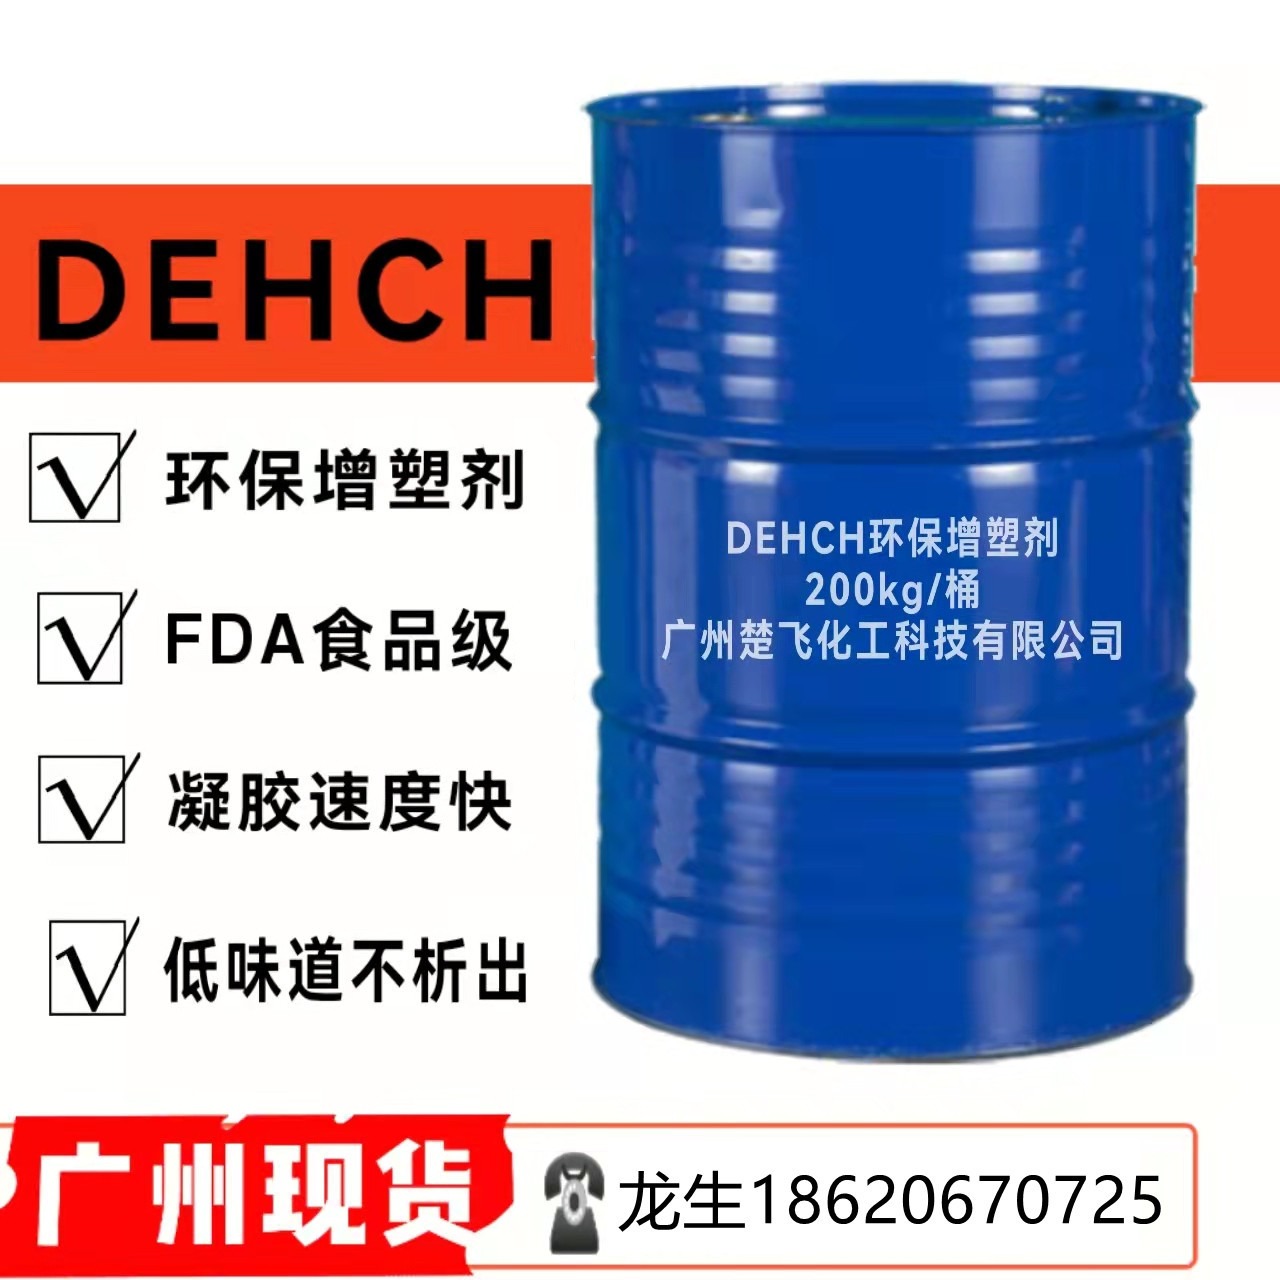 广州楚飞现货 DEHCH 增塑剂 PVC制品环保增塑剂 儿童玩具制品